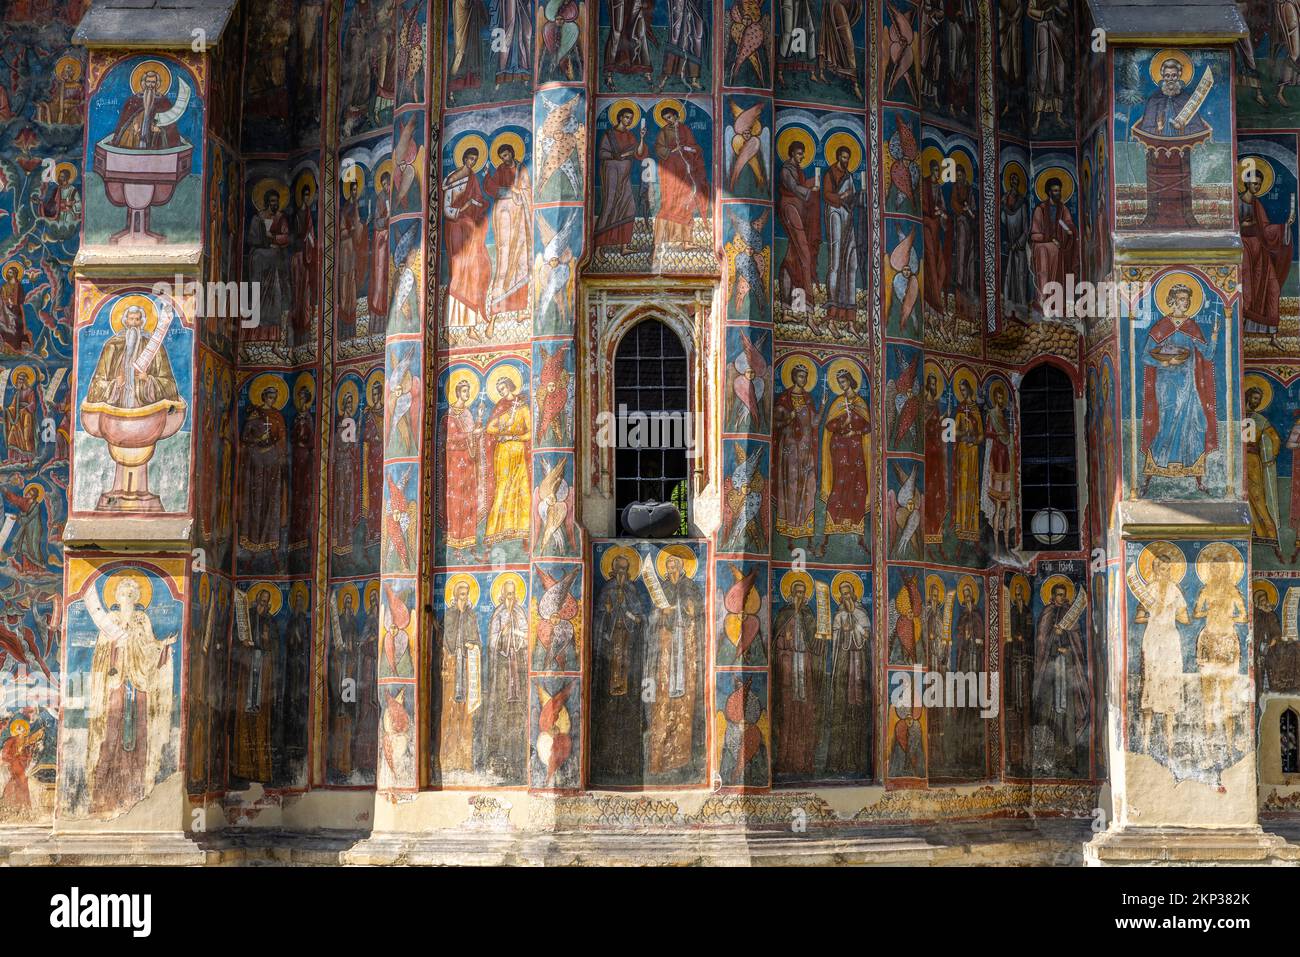 Monastero di Moldovita, sito patrimonio dell'umanità dell'UNESCO come una delle chiese dipinte della Moldavia, Romania Foto Stock